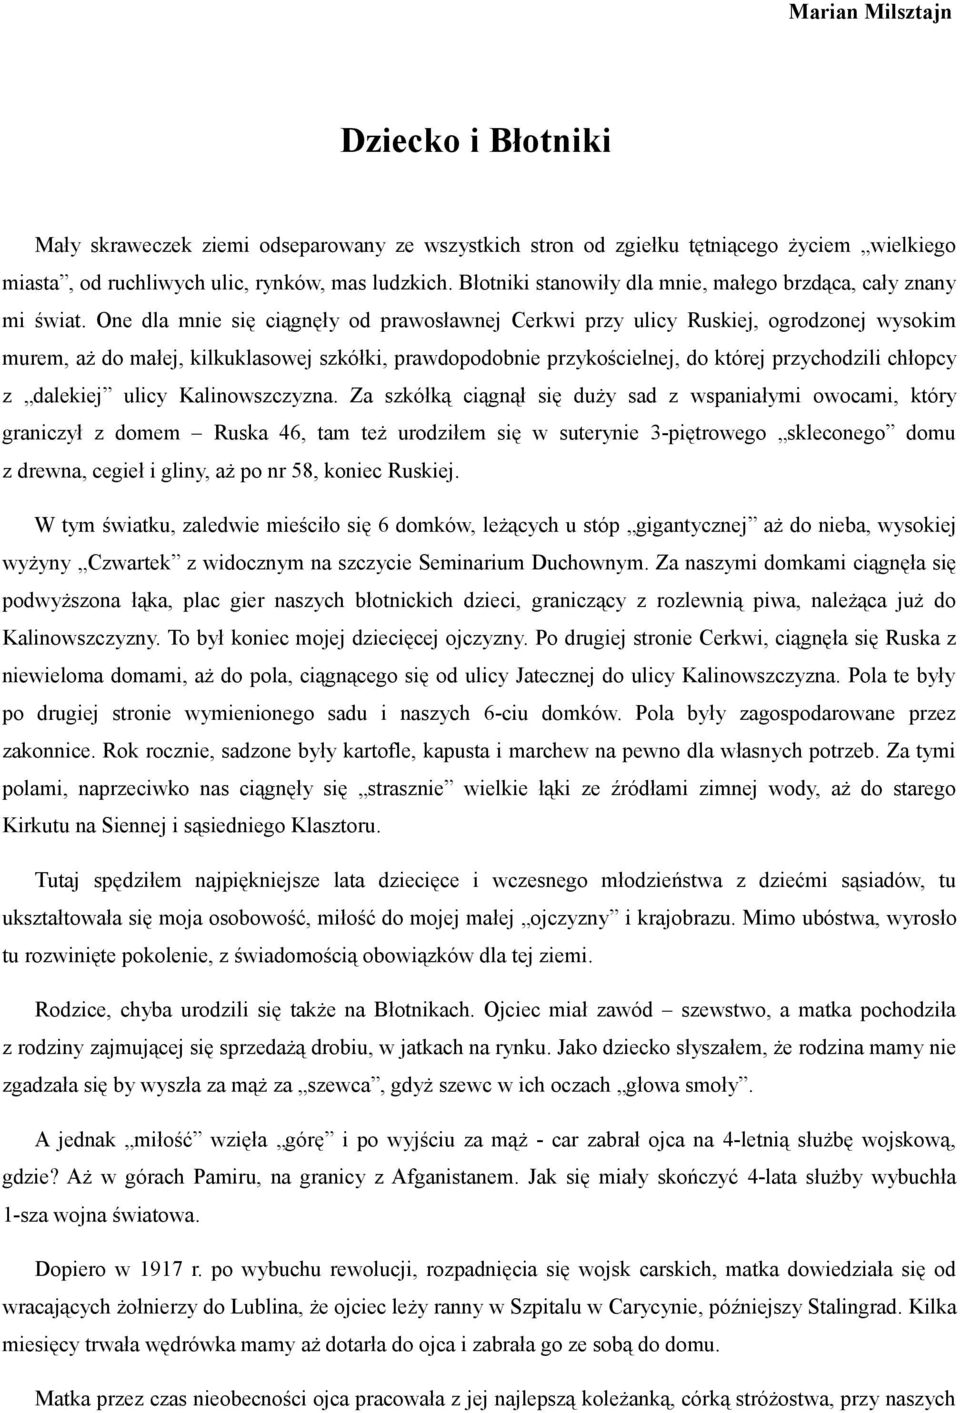 Dziecko i Błotniki. Marian Milsztajn - PDF Darmowe pobieranie